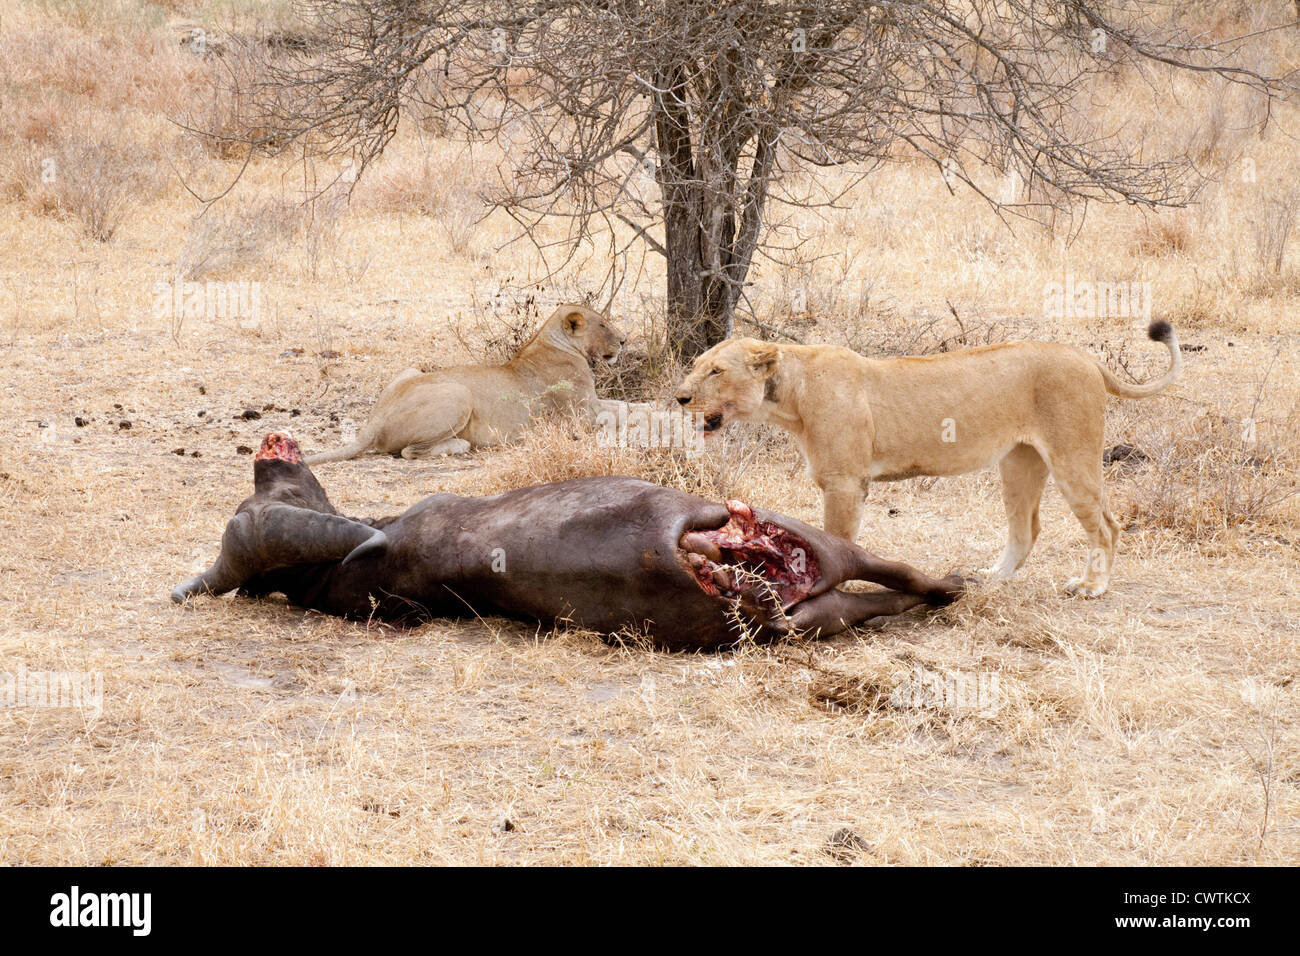 Deux lions et leurs femelles adultes (tuer un buffle mort), la réserve de gibier de Selous Tanzanie Afrique Banque D'Images